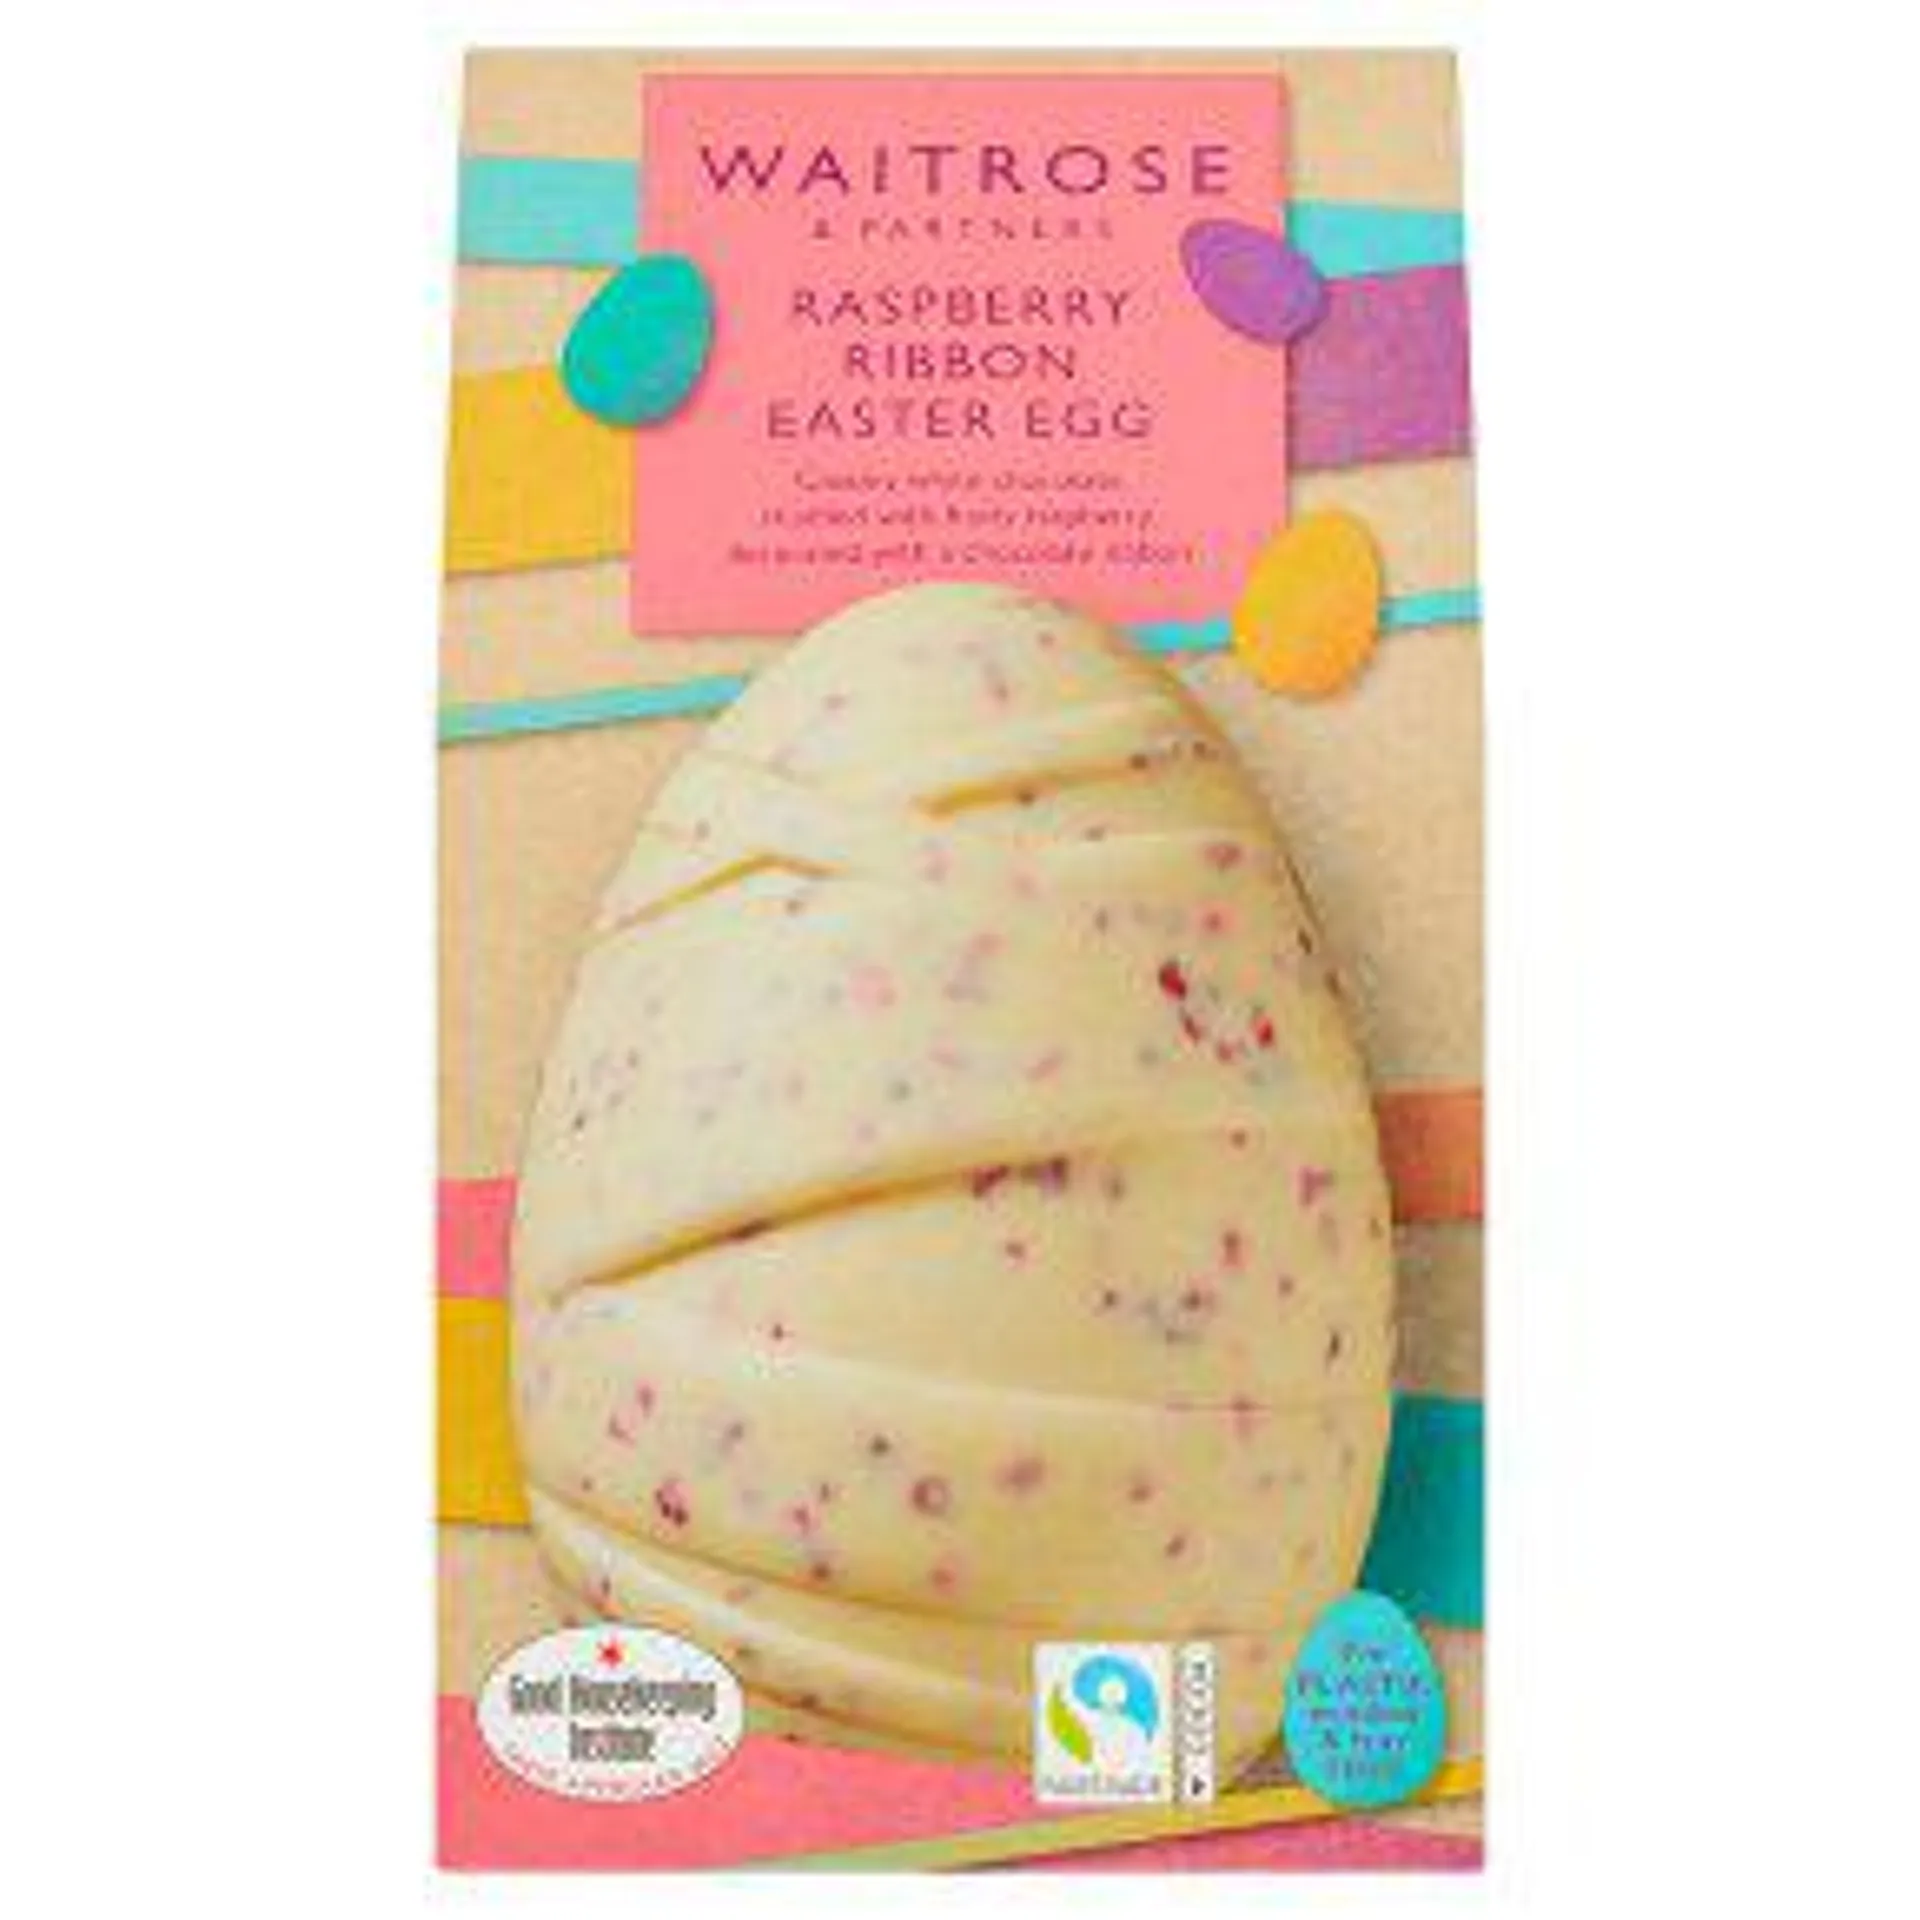 Waitrose Raspberry Ribbon Easter Egg